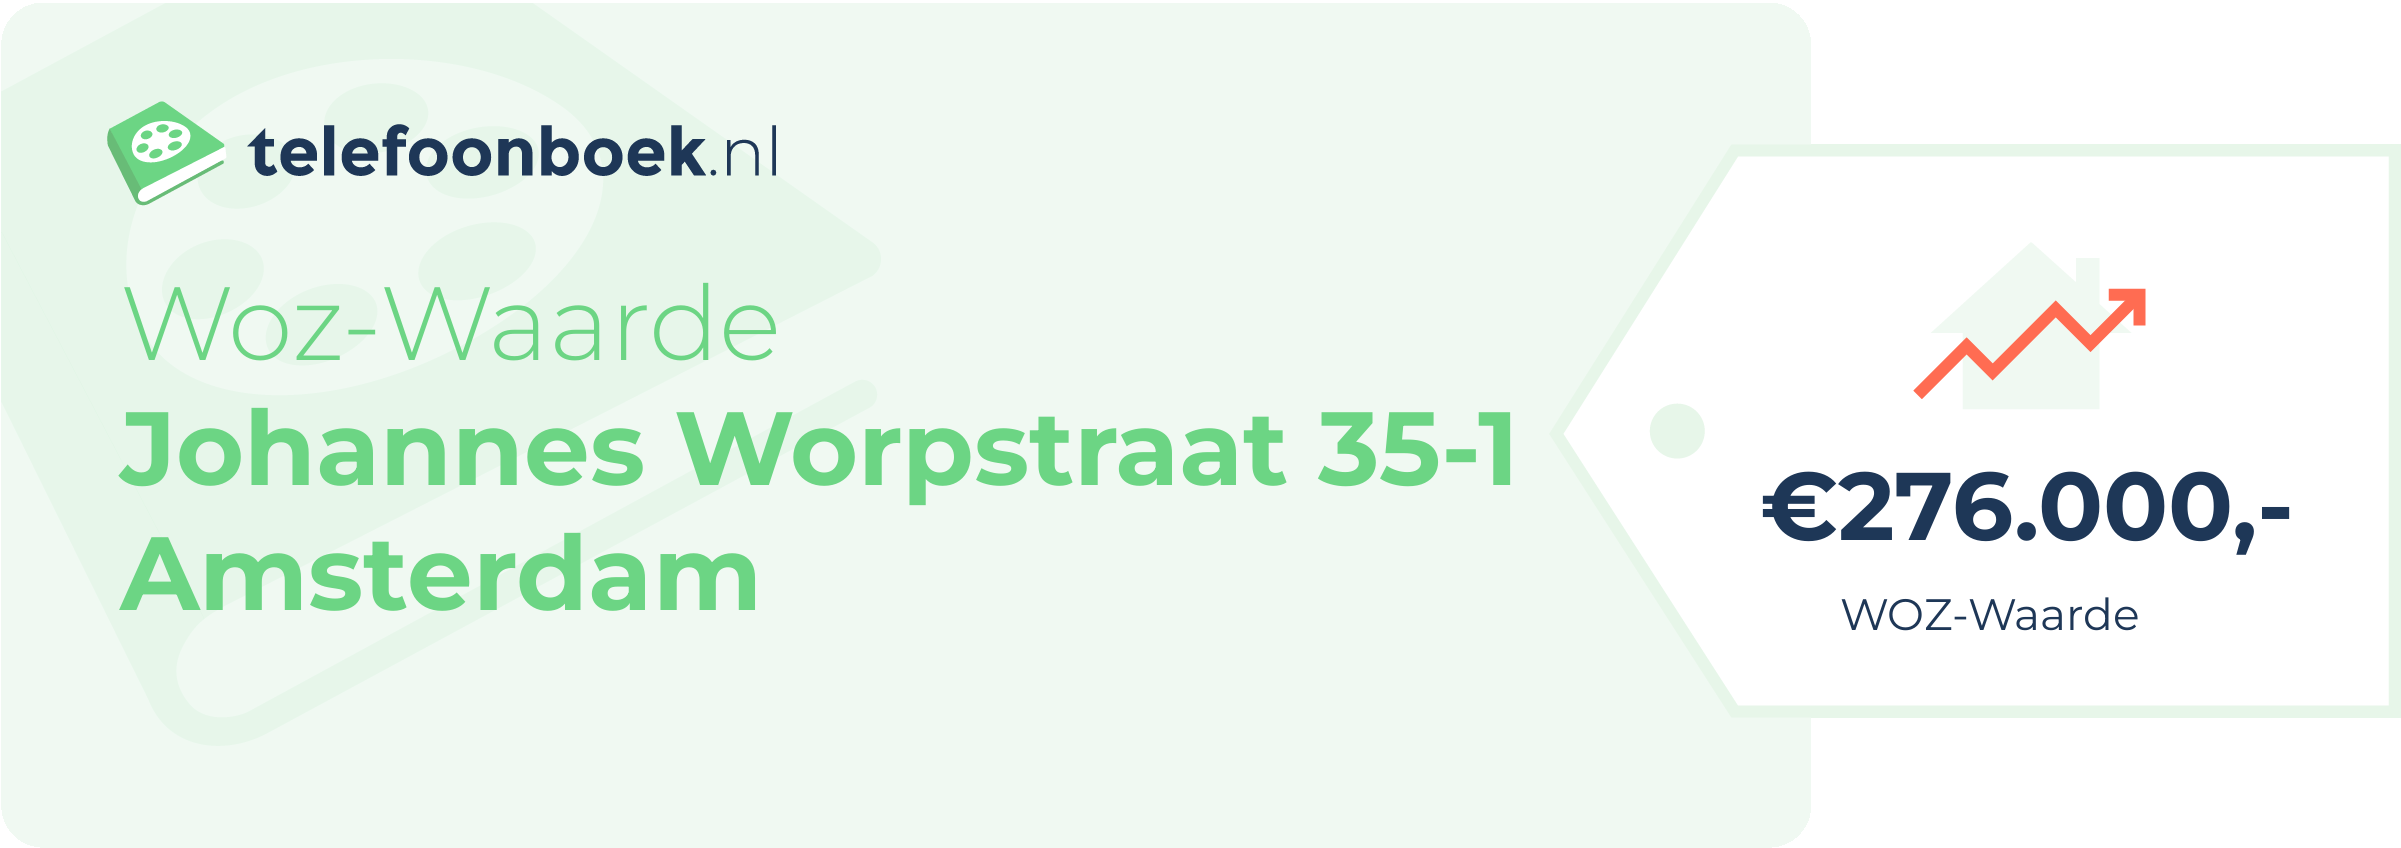 WOZ-waarde Johannes Worpstraat 35-1 Amsterdam